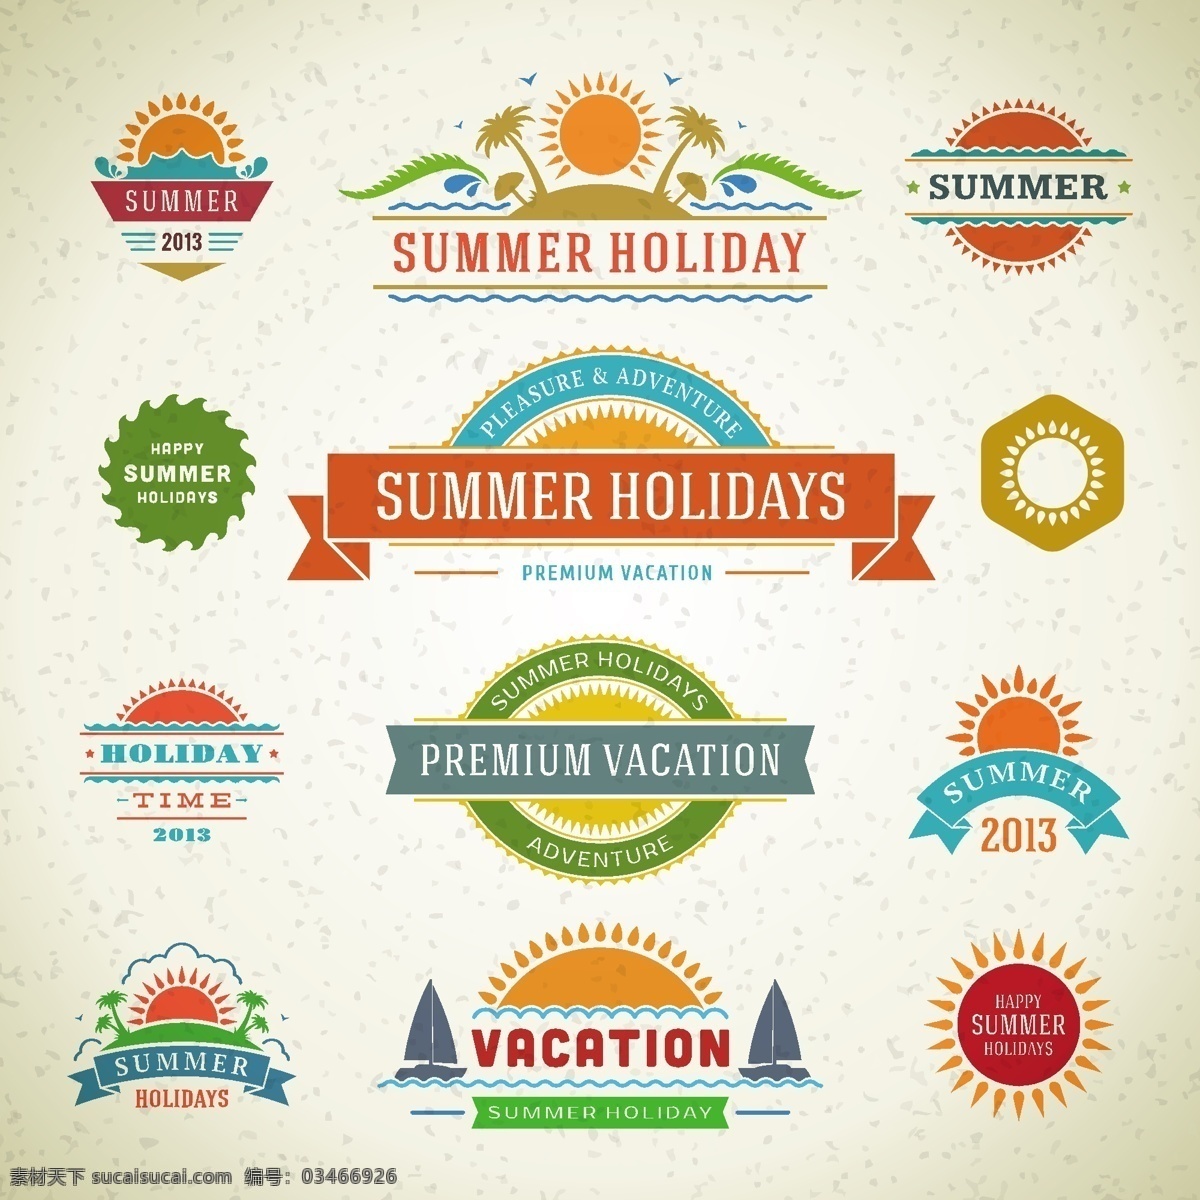 夏日 假日 酒店 标志 logo summer 标识设计 假期 矢量素材 图标 holiday 矢量图 其他矢量图